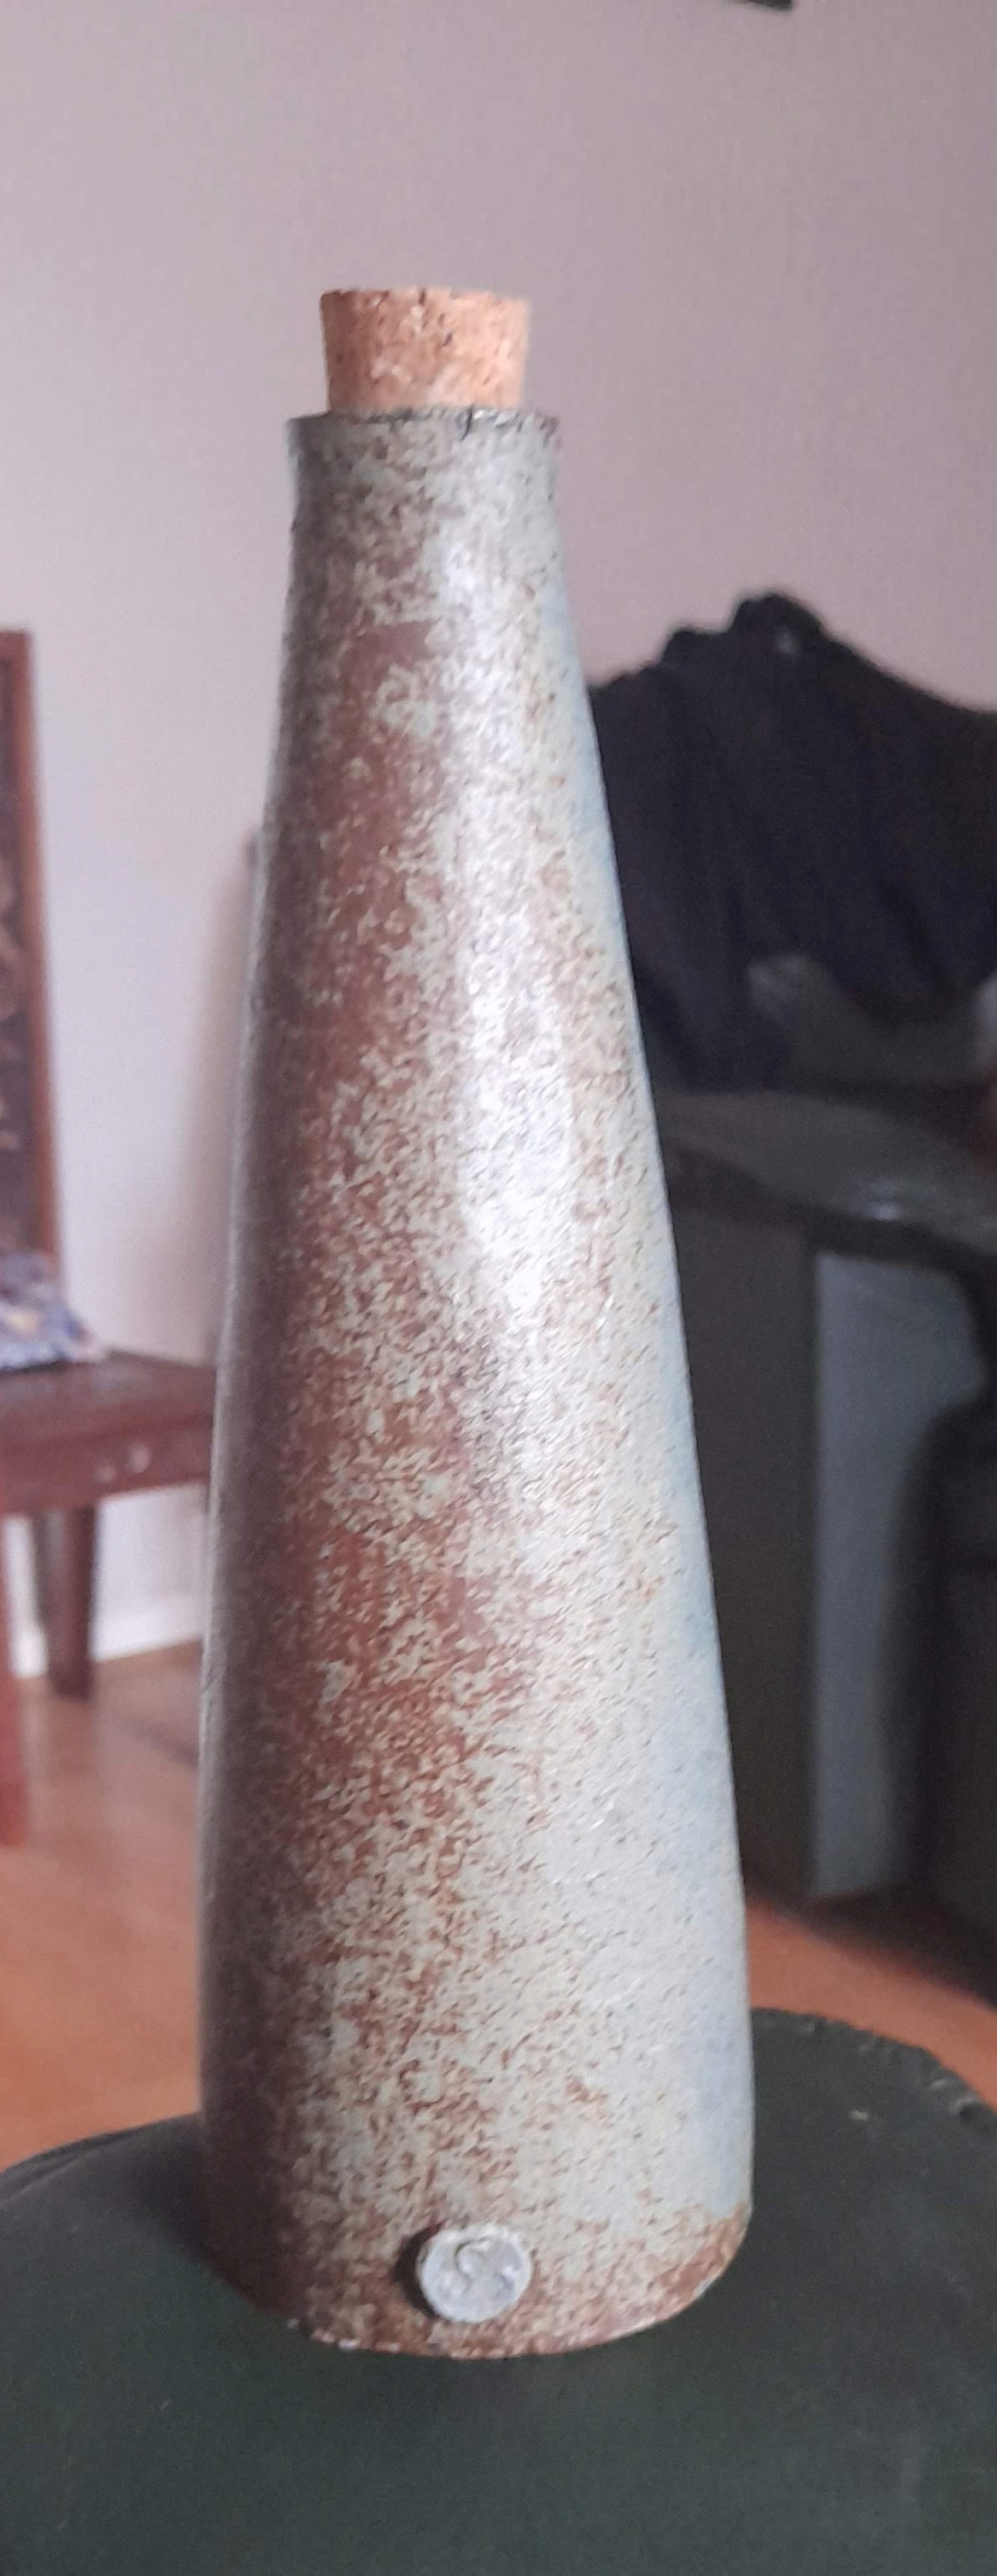 Studio pottery tapered bottle. 20220717